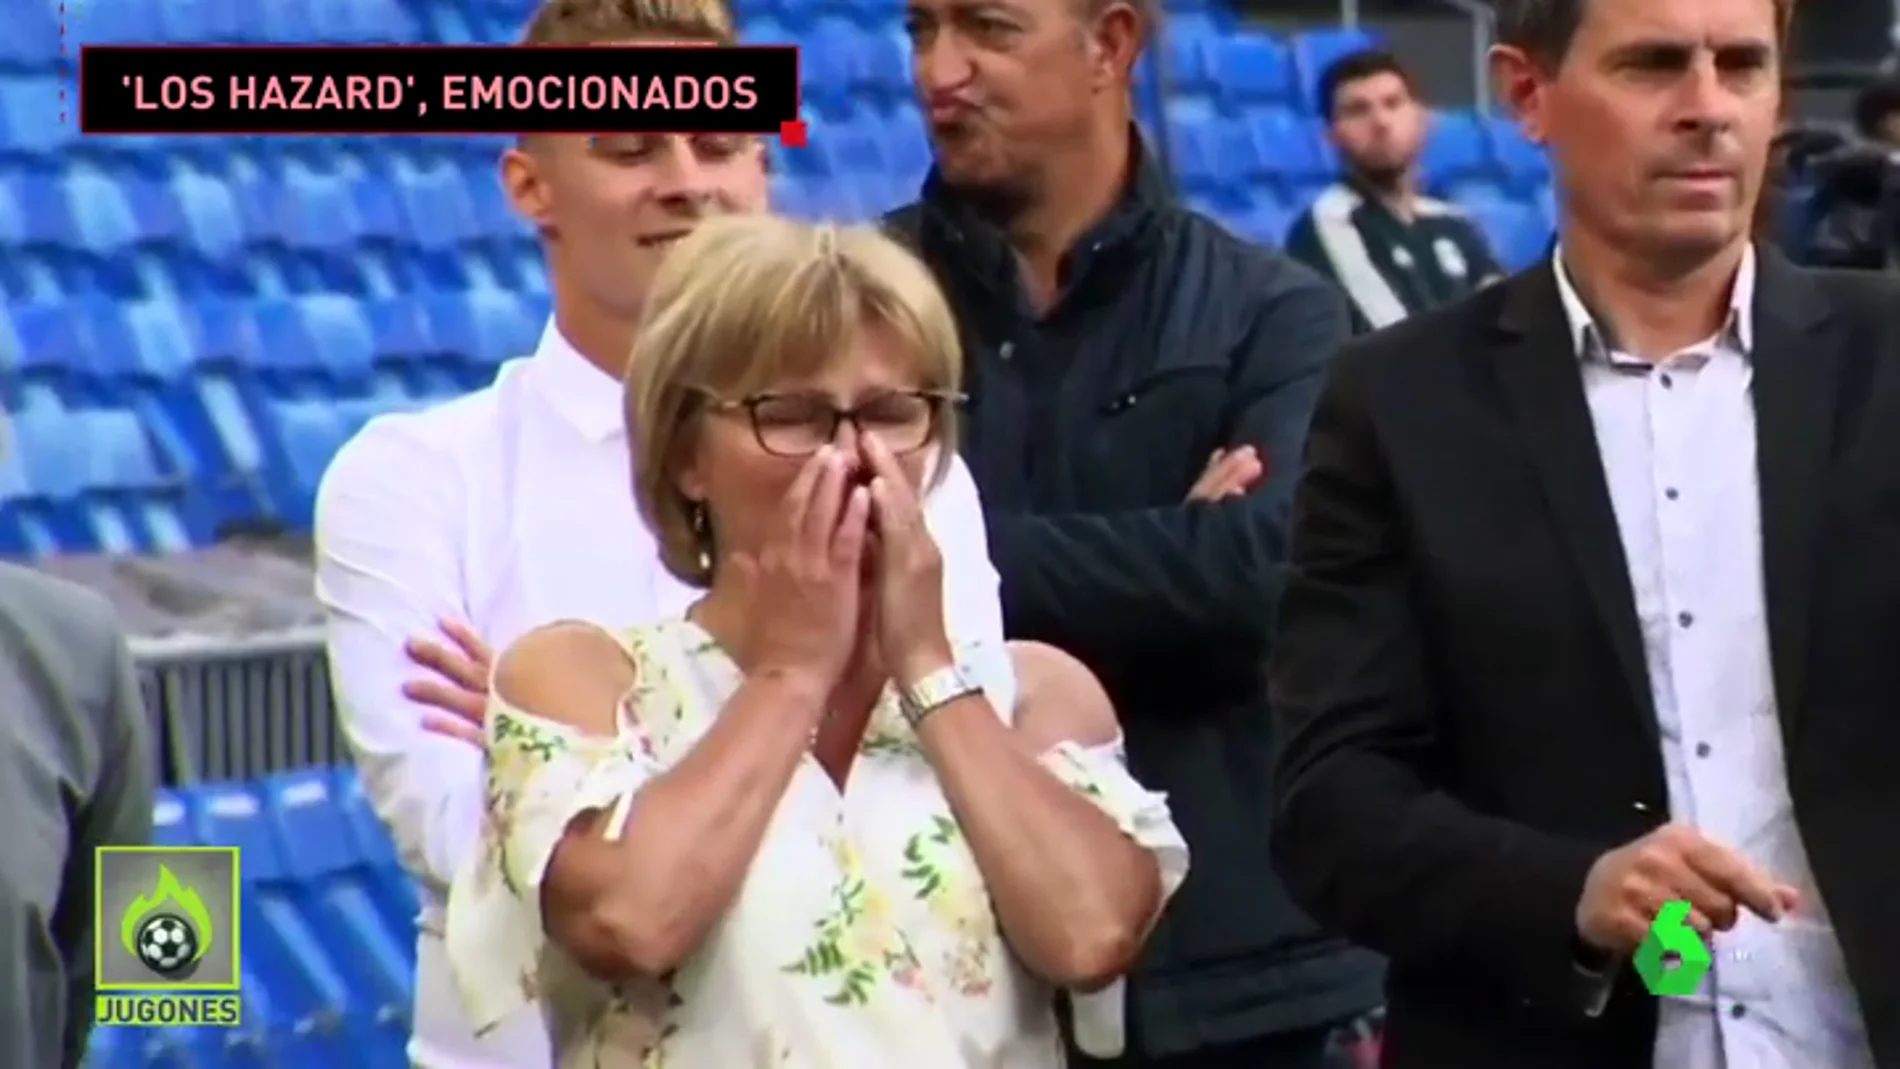 La emoción de la familia de Hazard en su presentación: su madre no pudo contener las lágrimas